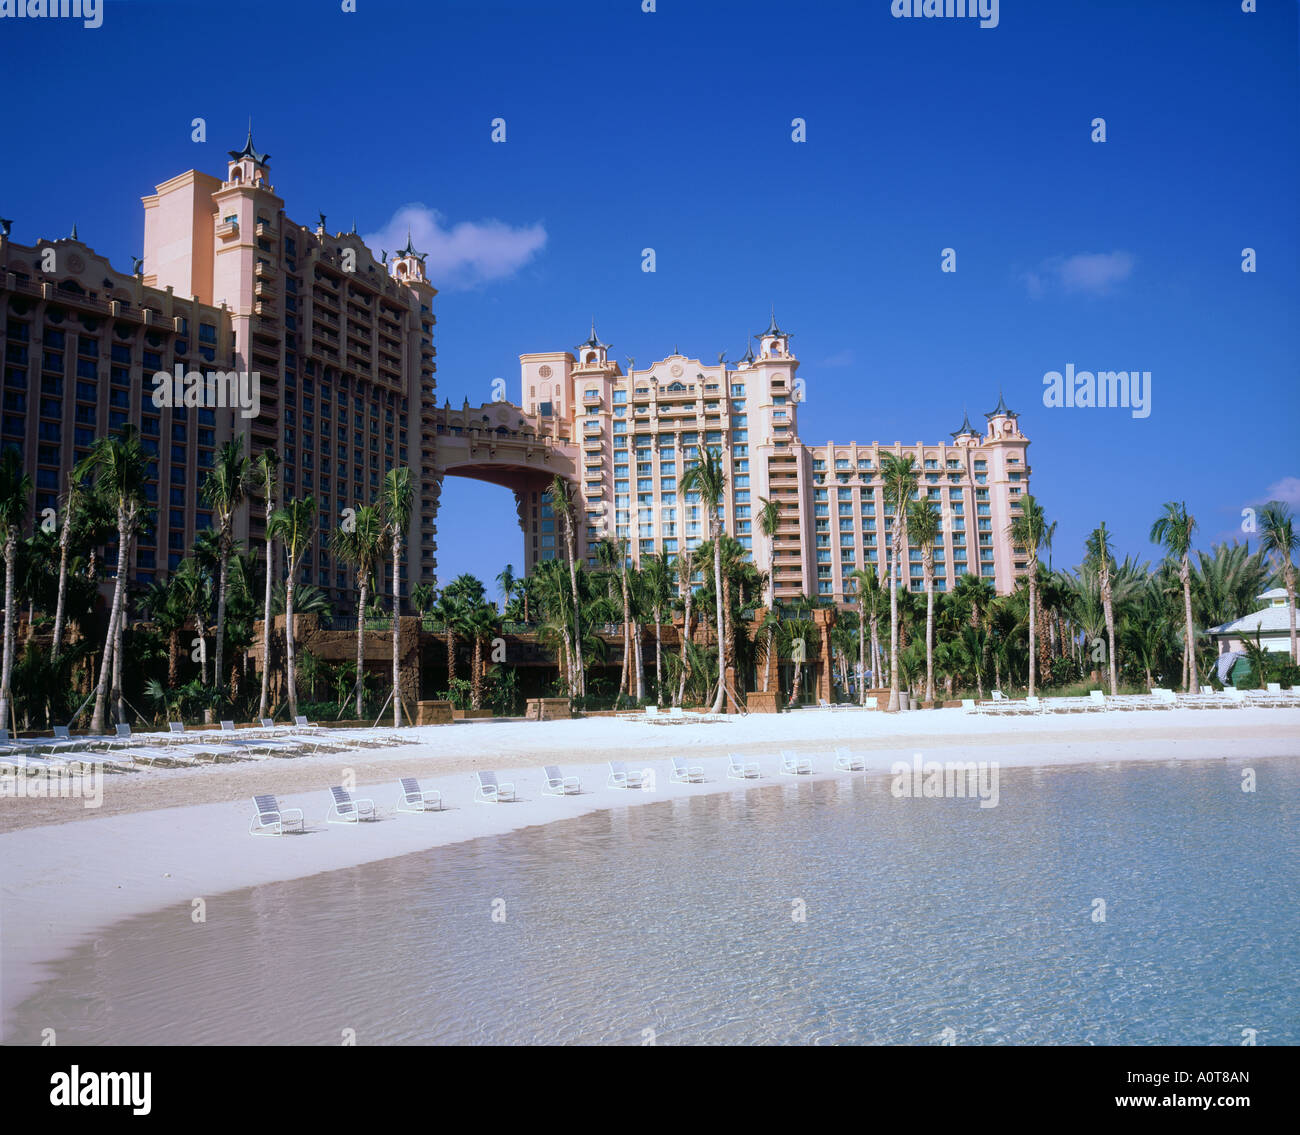 Hotel Atlantis Foto de stock